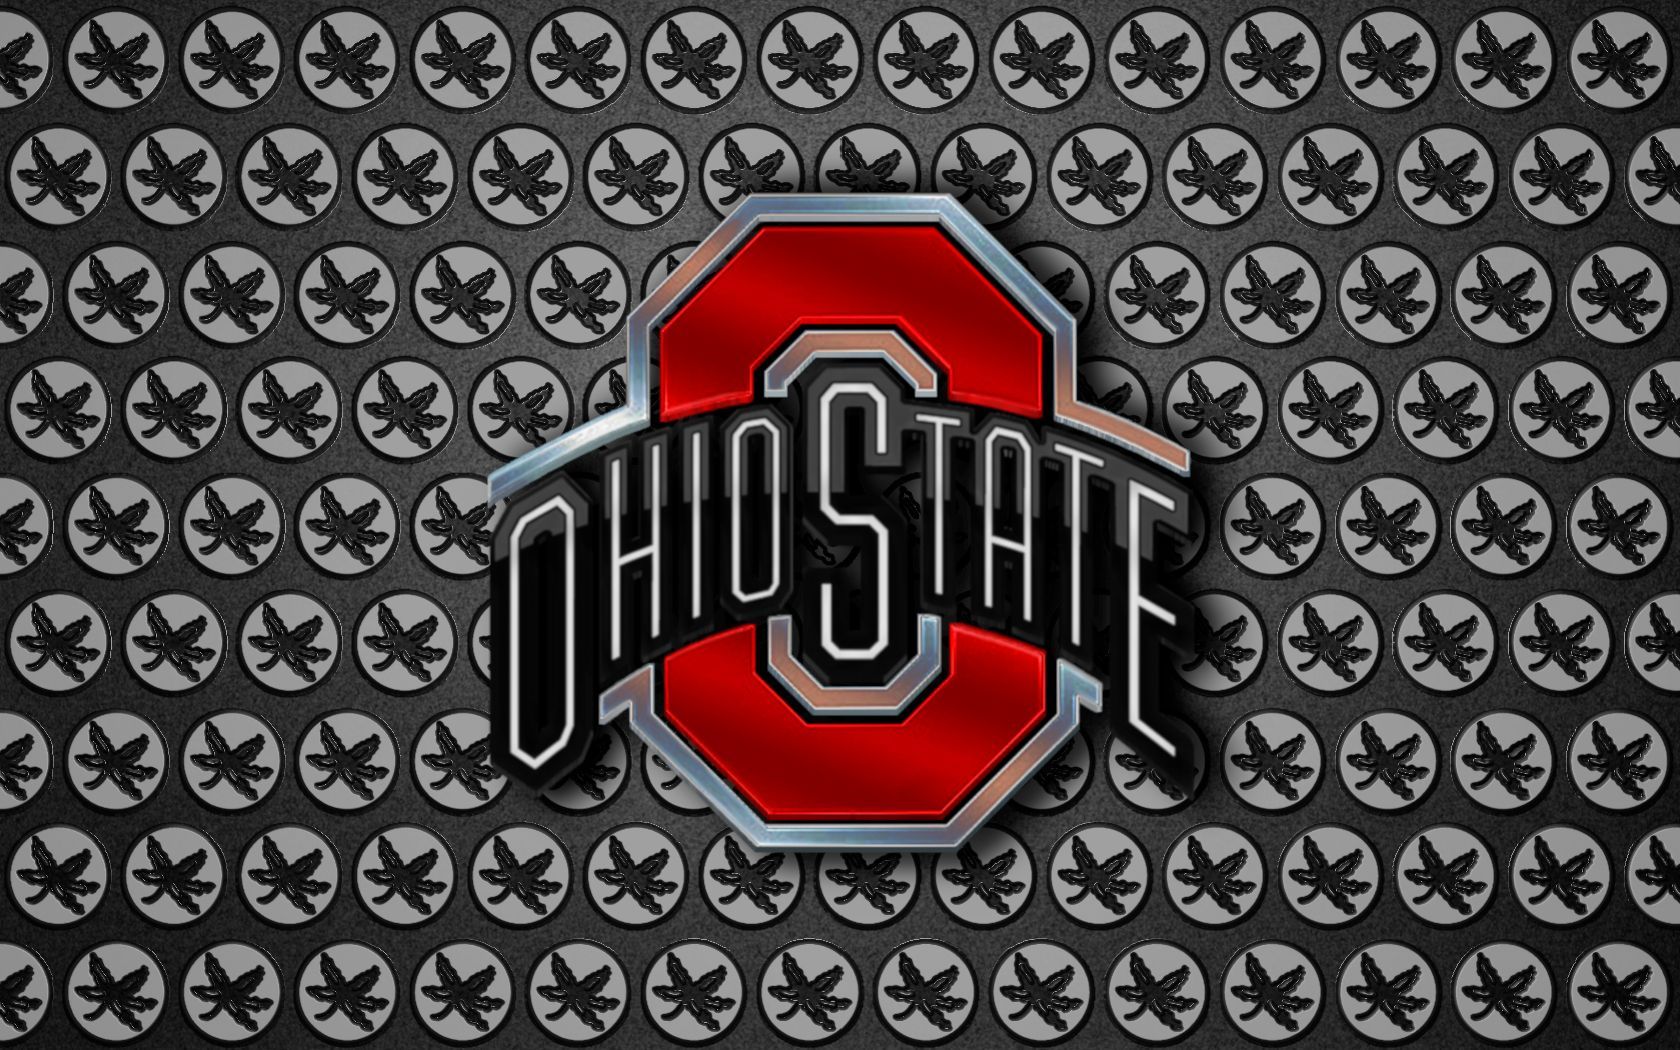 OSU Wallpaper 535. Ohio state wallpaper, Osu wallpaper, Buckeyes football